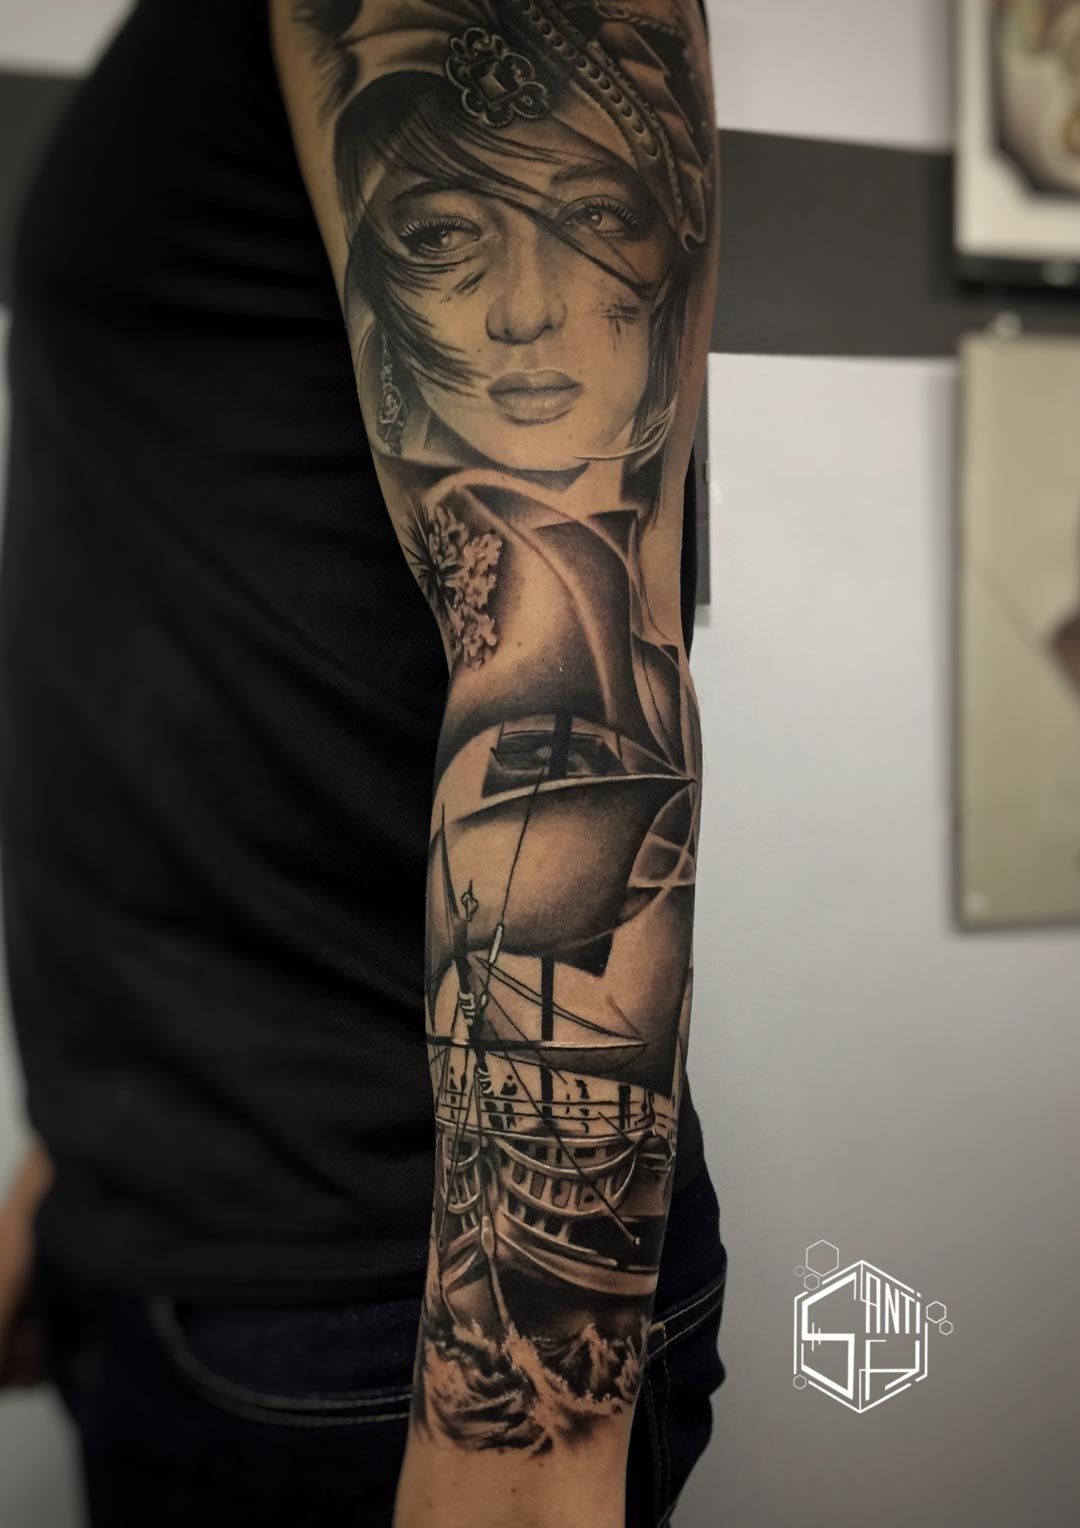 Tatuaje Realista de pirata en barco realizado en blancos y negros sobre el brazo completo. Tatuajes Realistas & New School de Santi H en Madrid